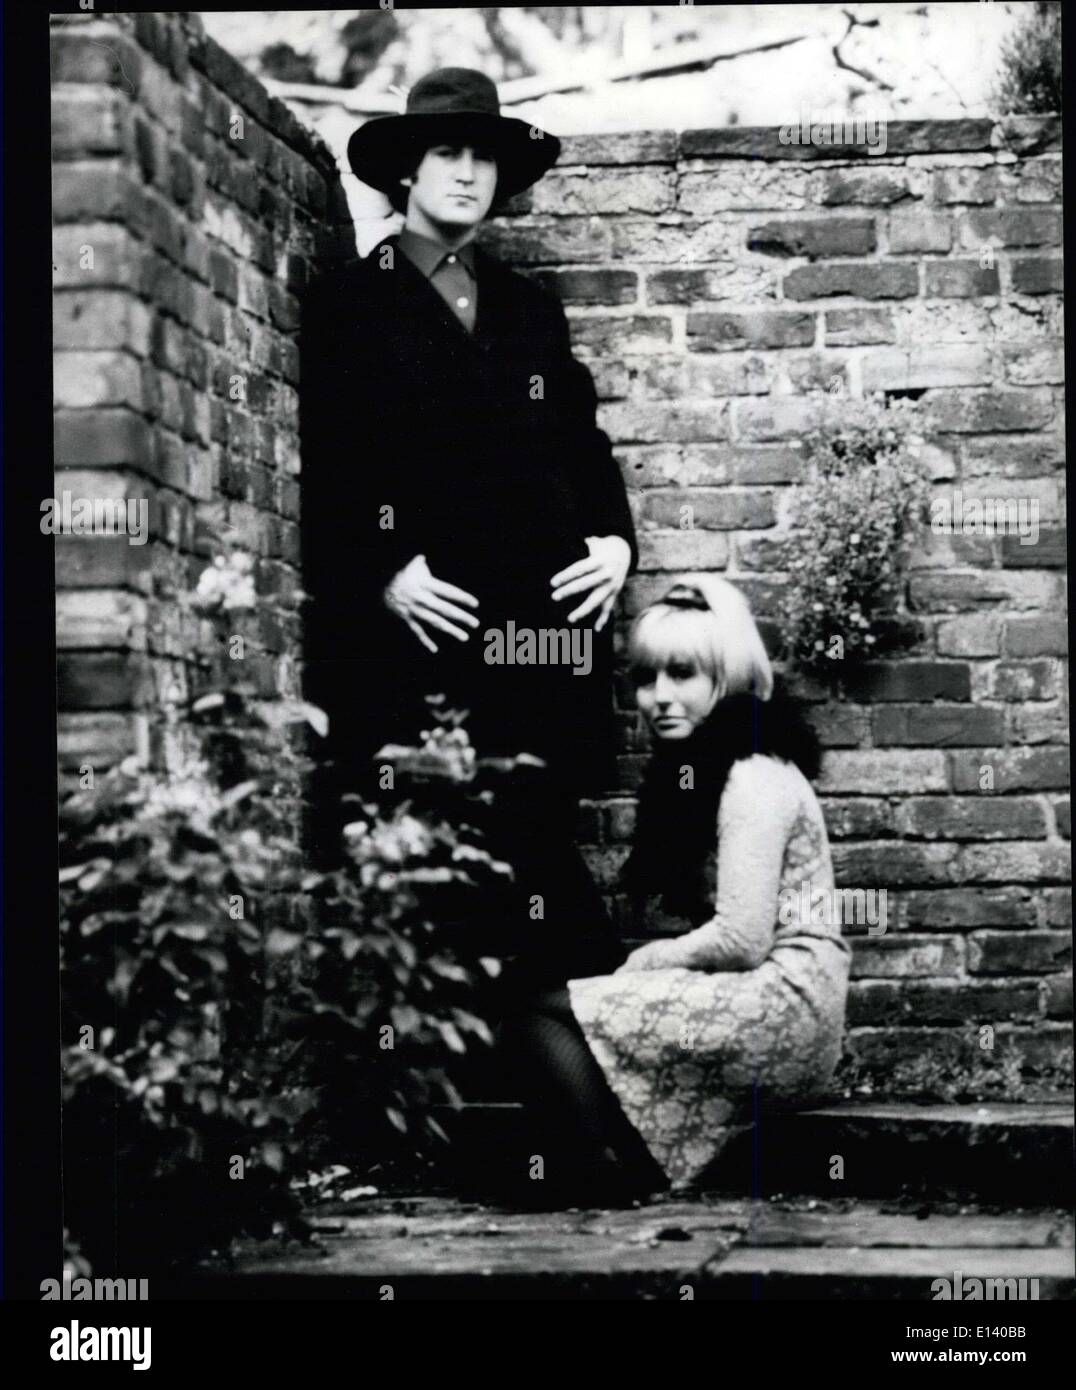 31 mars 2012 - L'Espagnol Signor et son épouse sont John Lennon et sa femme Cynthia, disporting eux-mêmes dans leur beau jardin secret. Banque D'Images